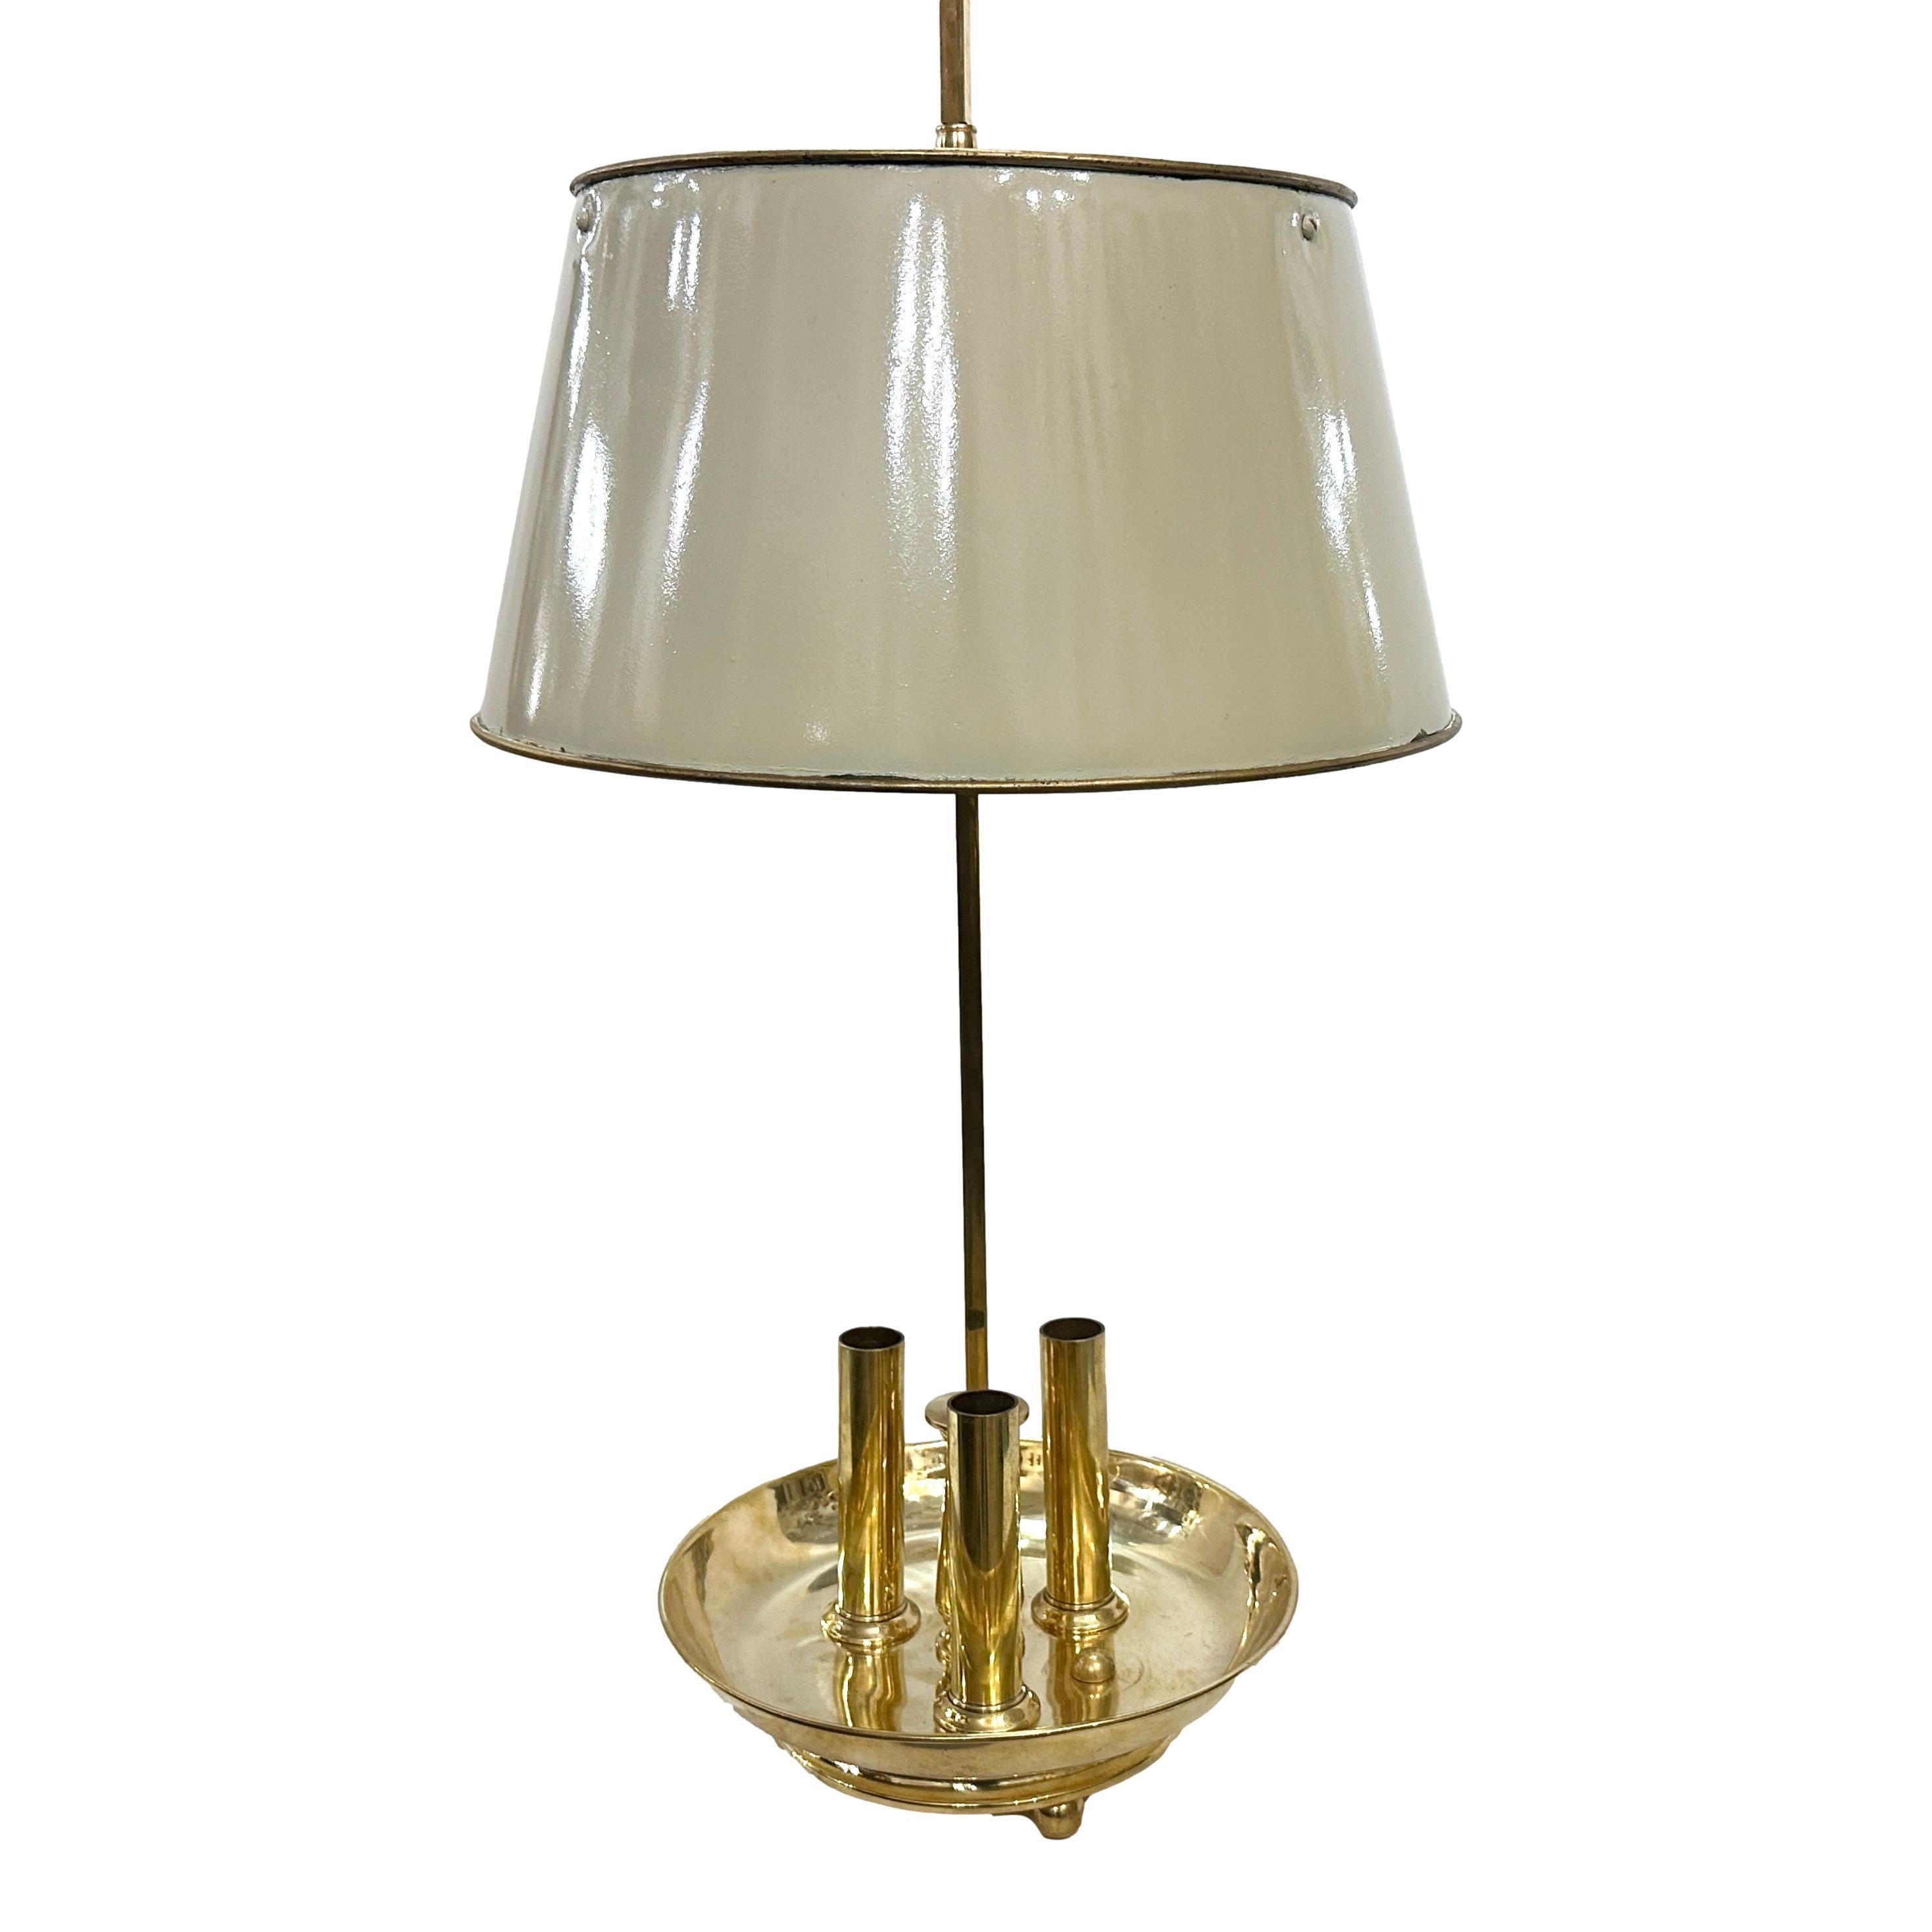 Lampe de bureau à bouillotte en bronze poli avec abat-jour peint, datant des années 50

Mesures : 
Hauteur : 36
Diamètre au plus large (ombre) 14,5